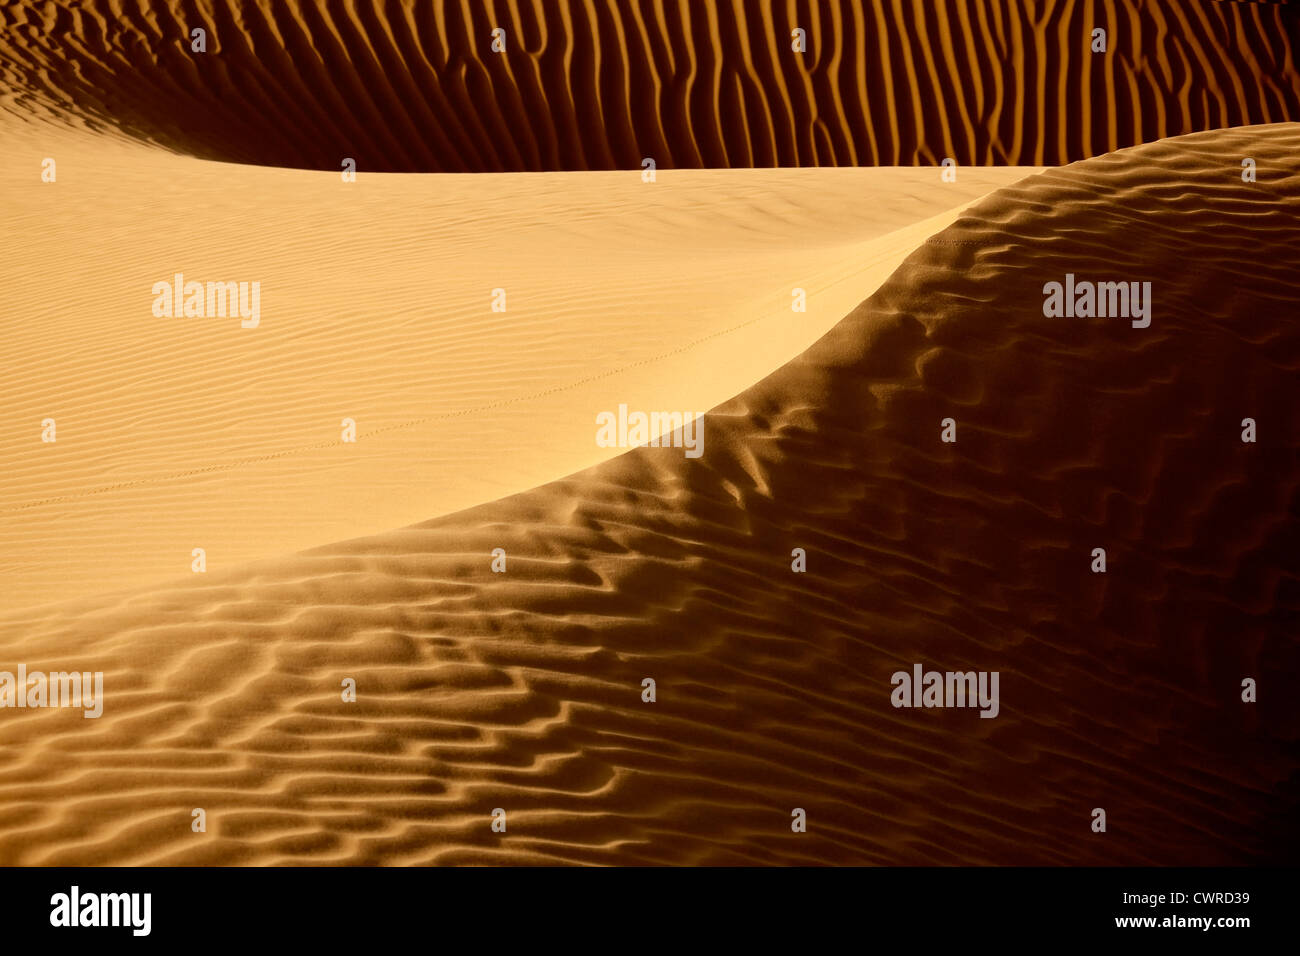 Bild von Sanddünen in der Sahara Wüste von Marokko. Stockfoto